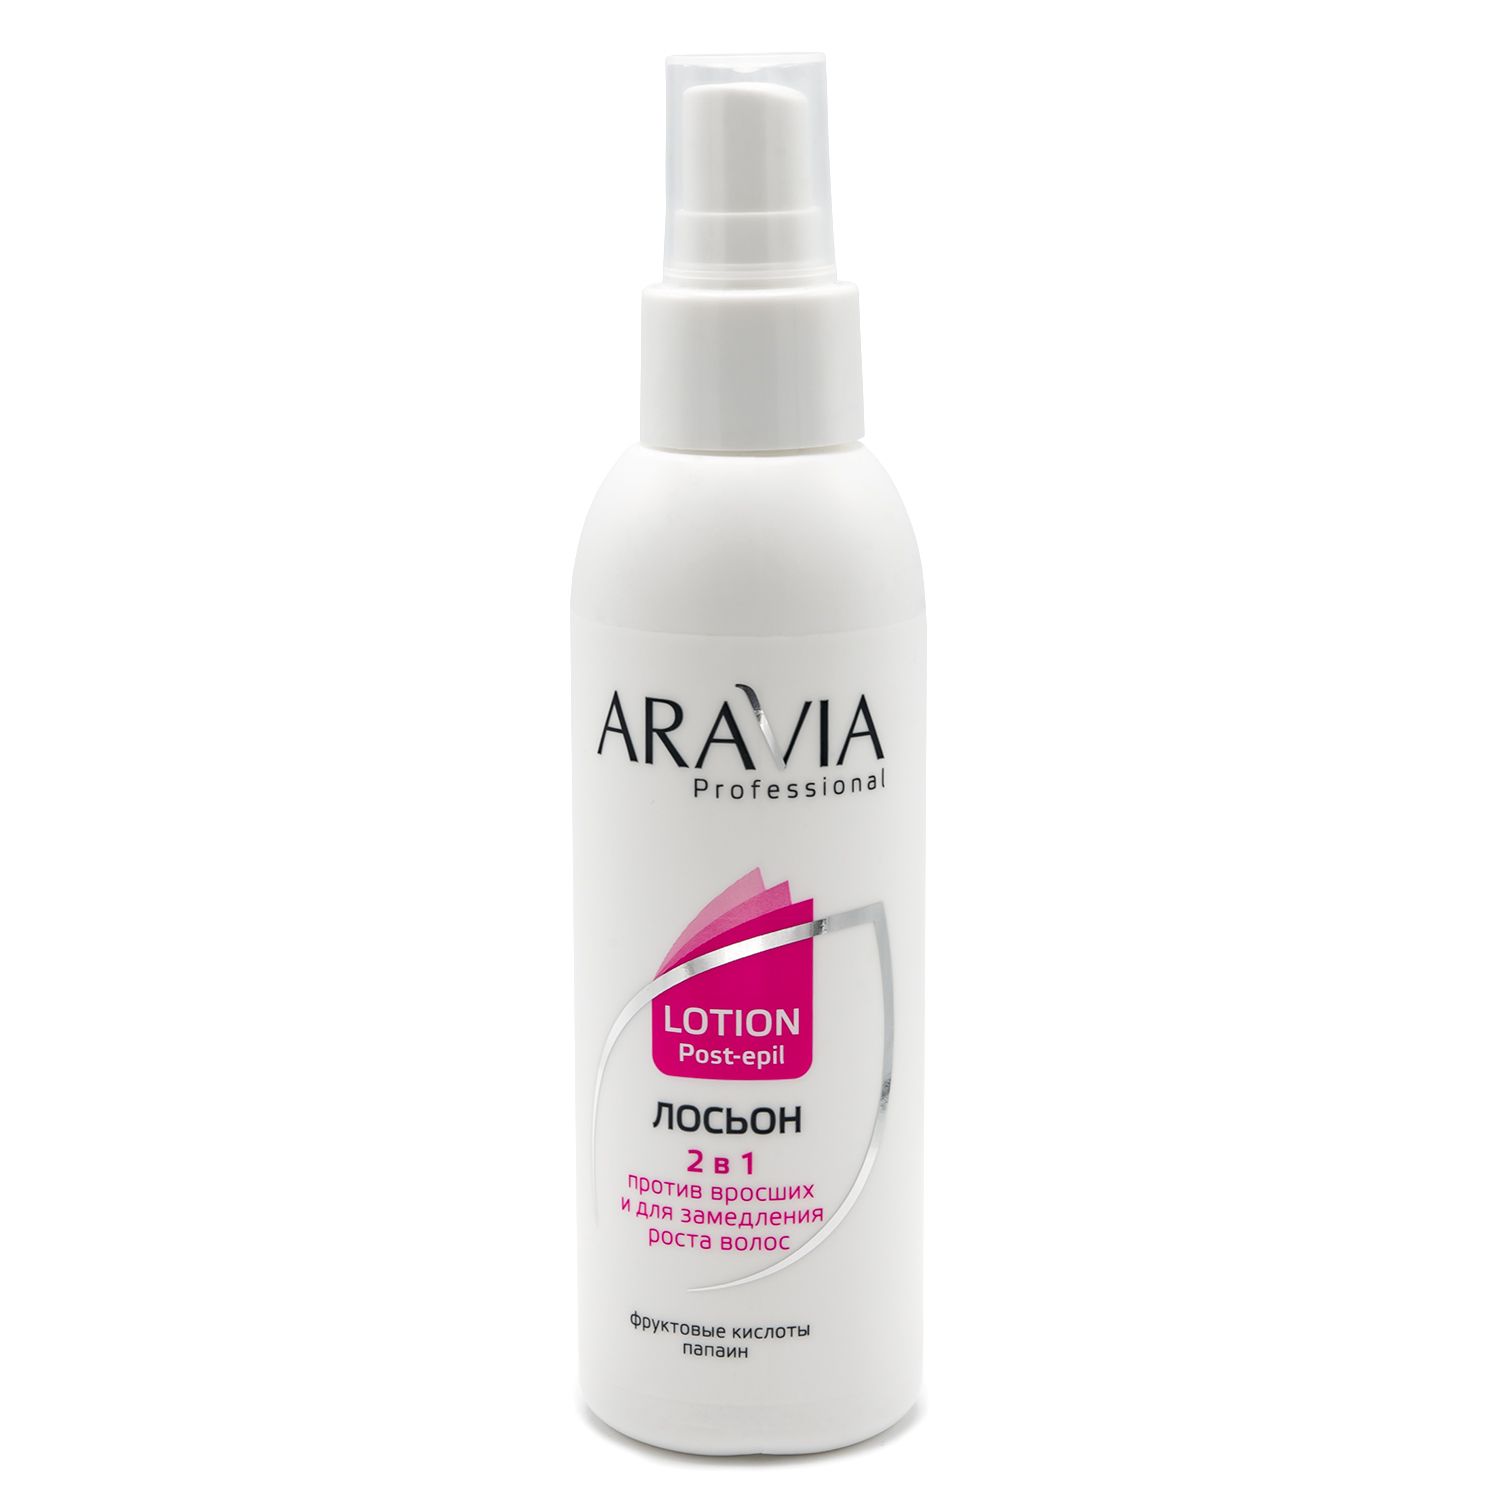 Aravia Professional Лосьон 2 В 1 против вросших волос и для замедления роста волос с фруктовыми кислотами, 150мл